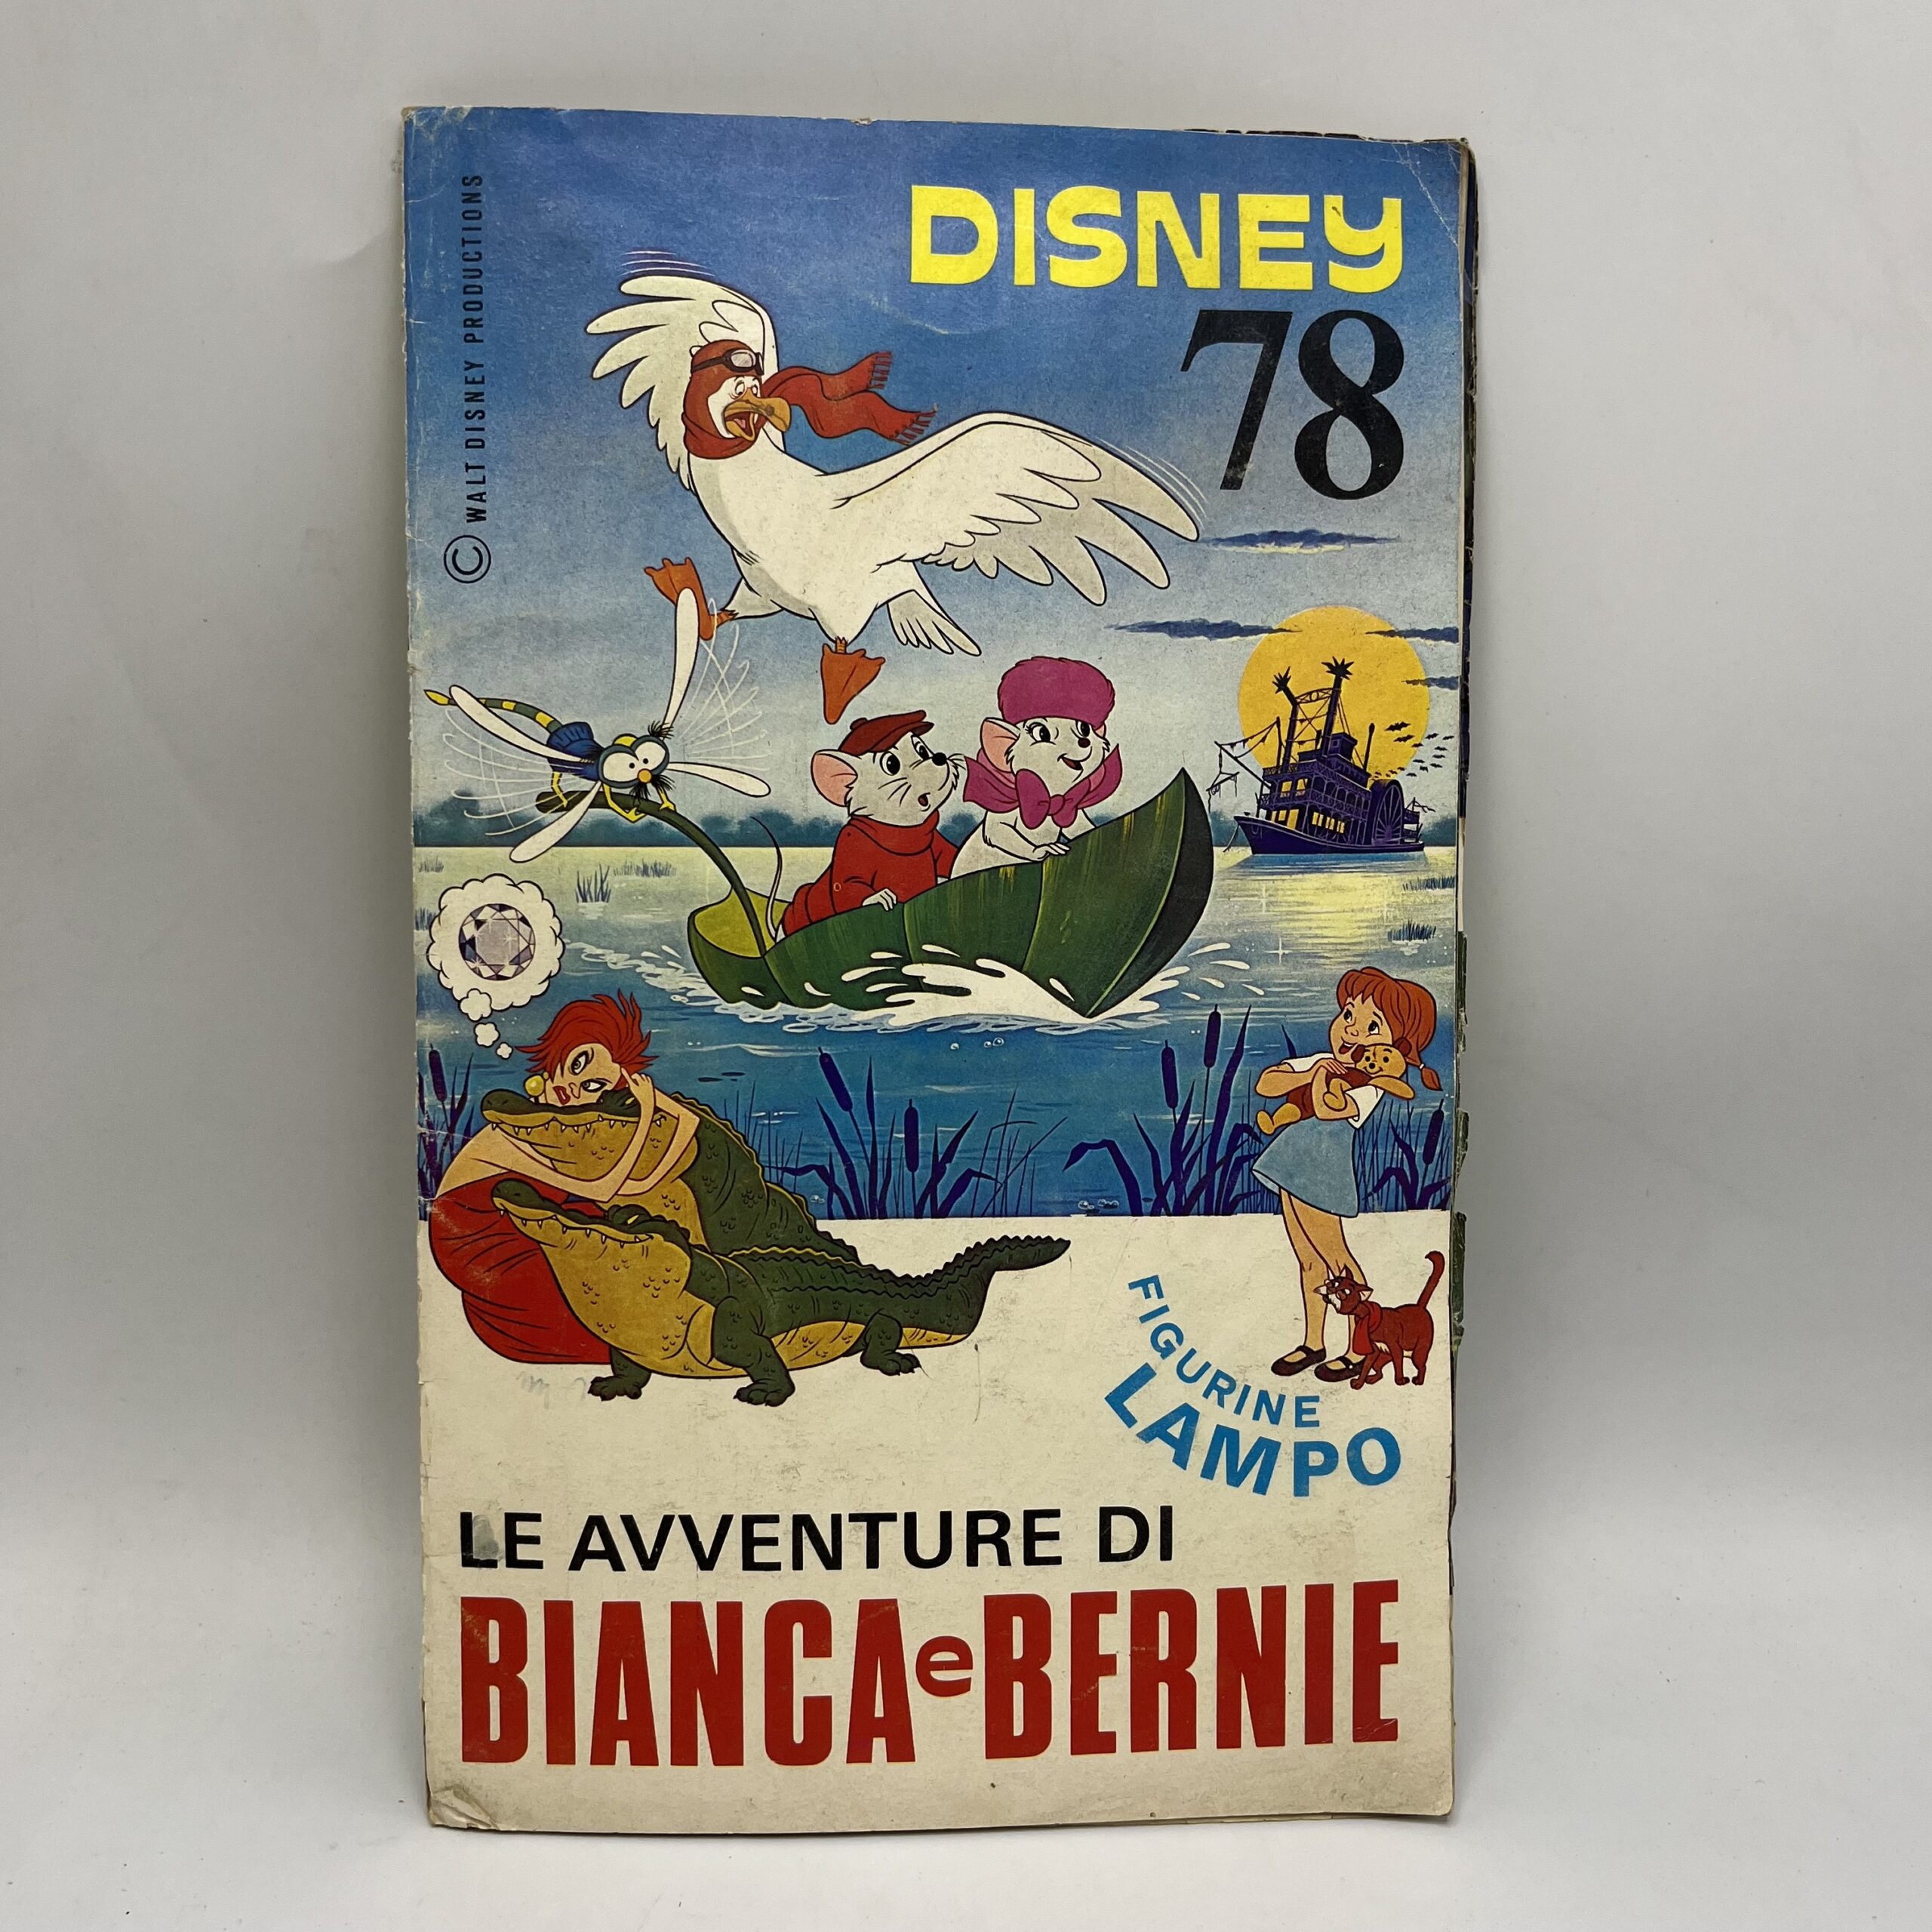 Album figurine Disney "Le avventure di Bianca e Bernie" Lampo 1978 incompleto